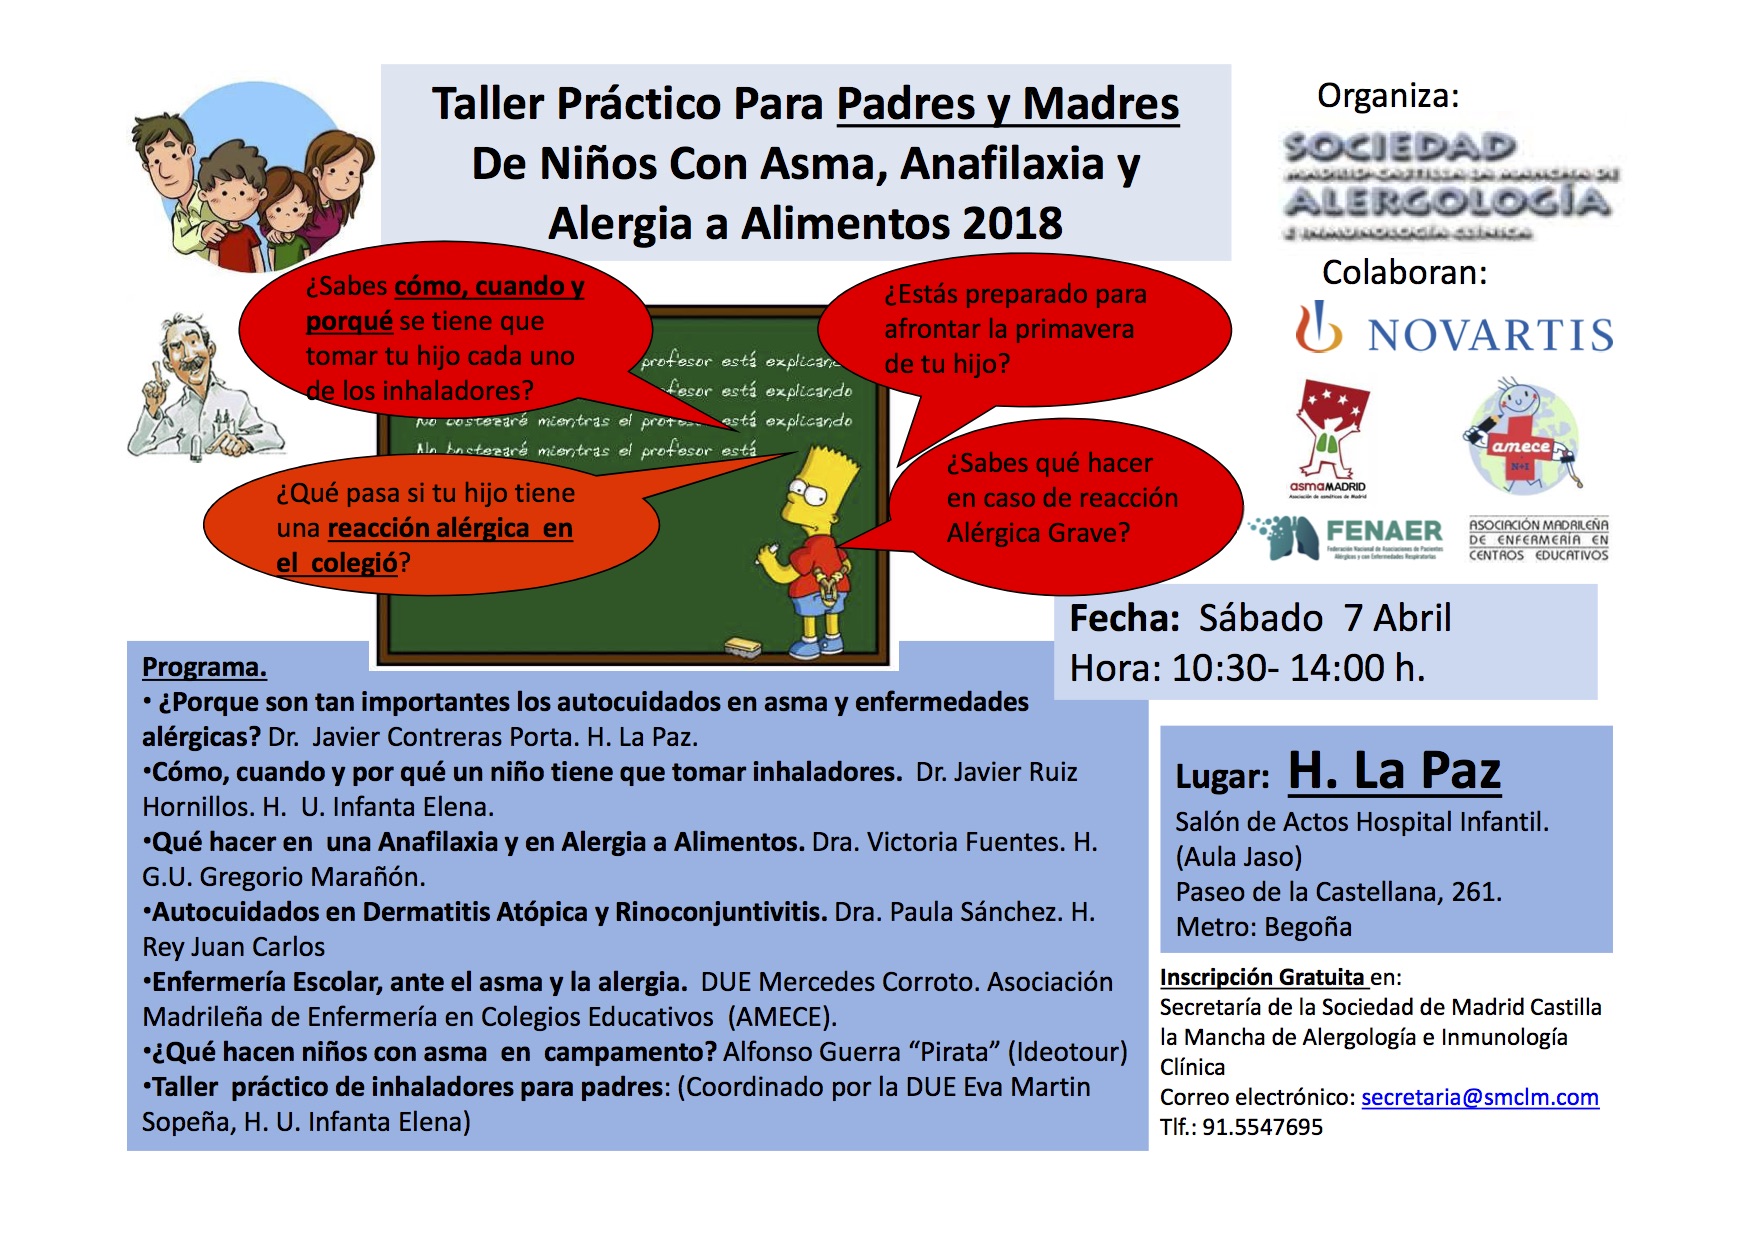 Taller práctico para padres de niños con asma, anafilaxia y alergia a alimentos 2018